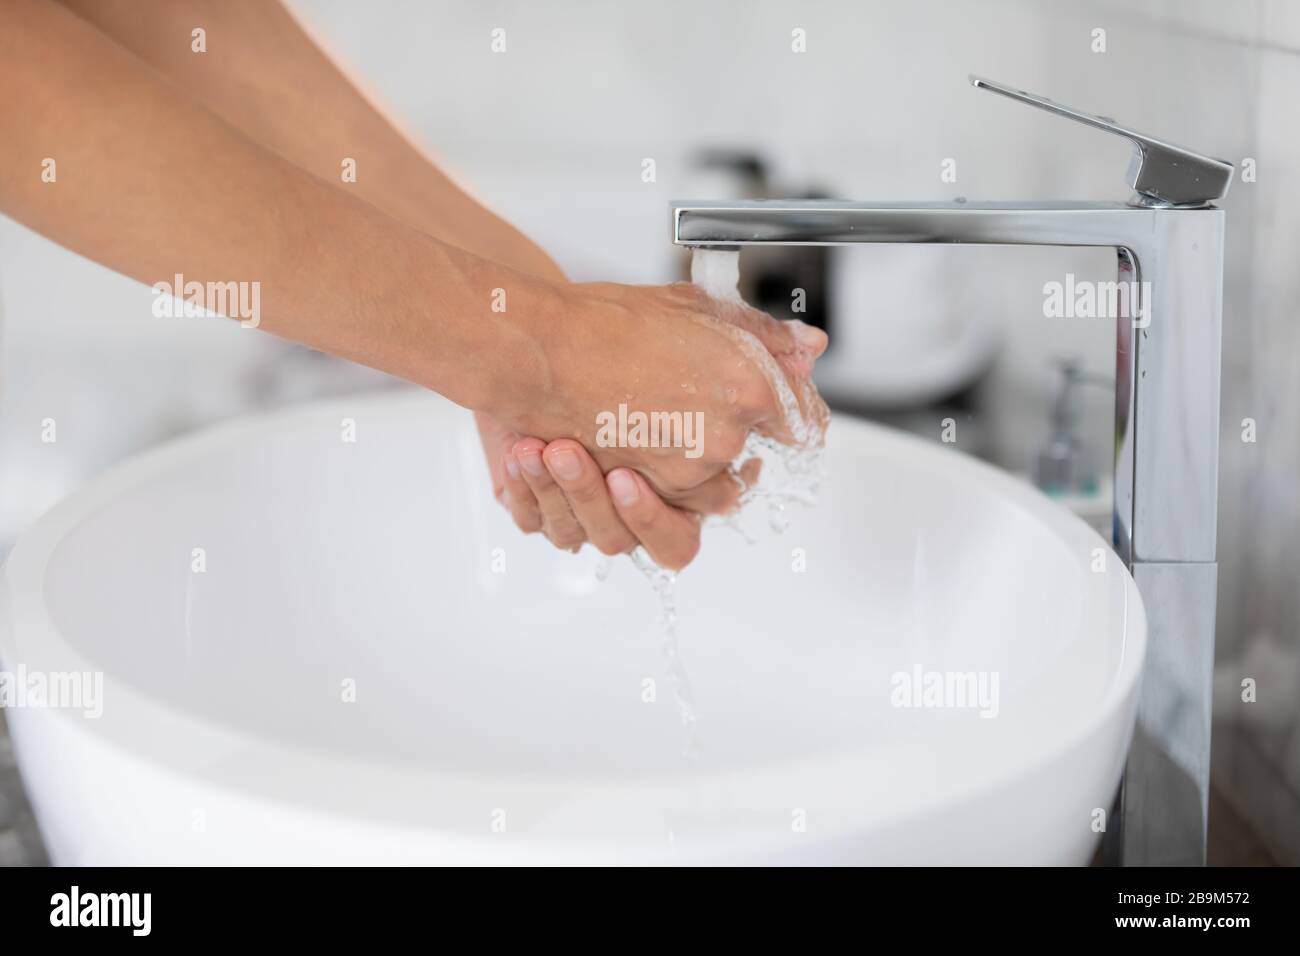 Wasser aus Wasserhahn gießen, während Frau die Hände in der Nahansicht waschen Stockfoto